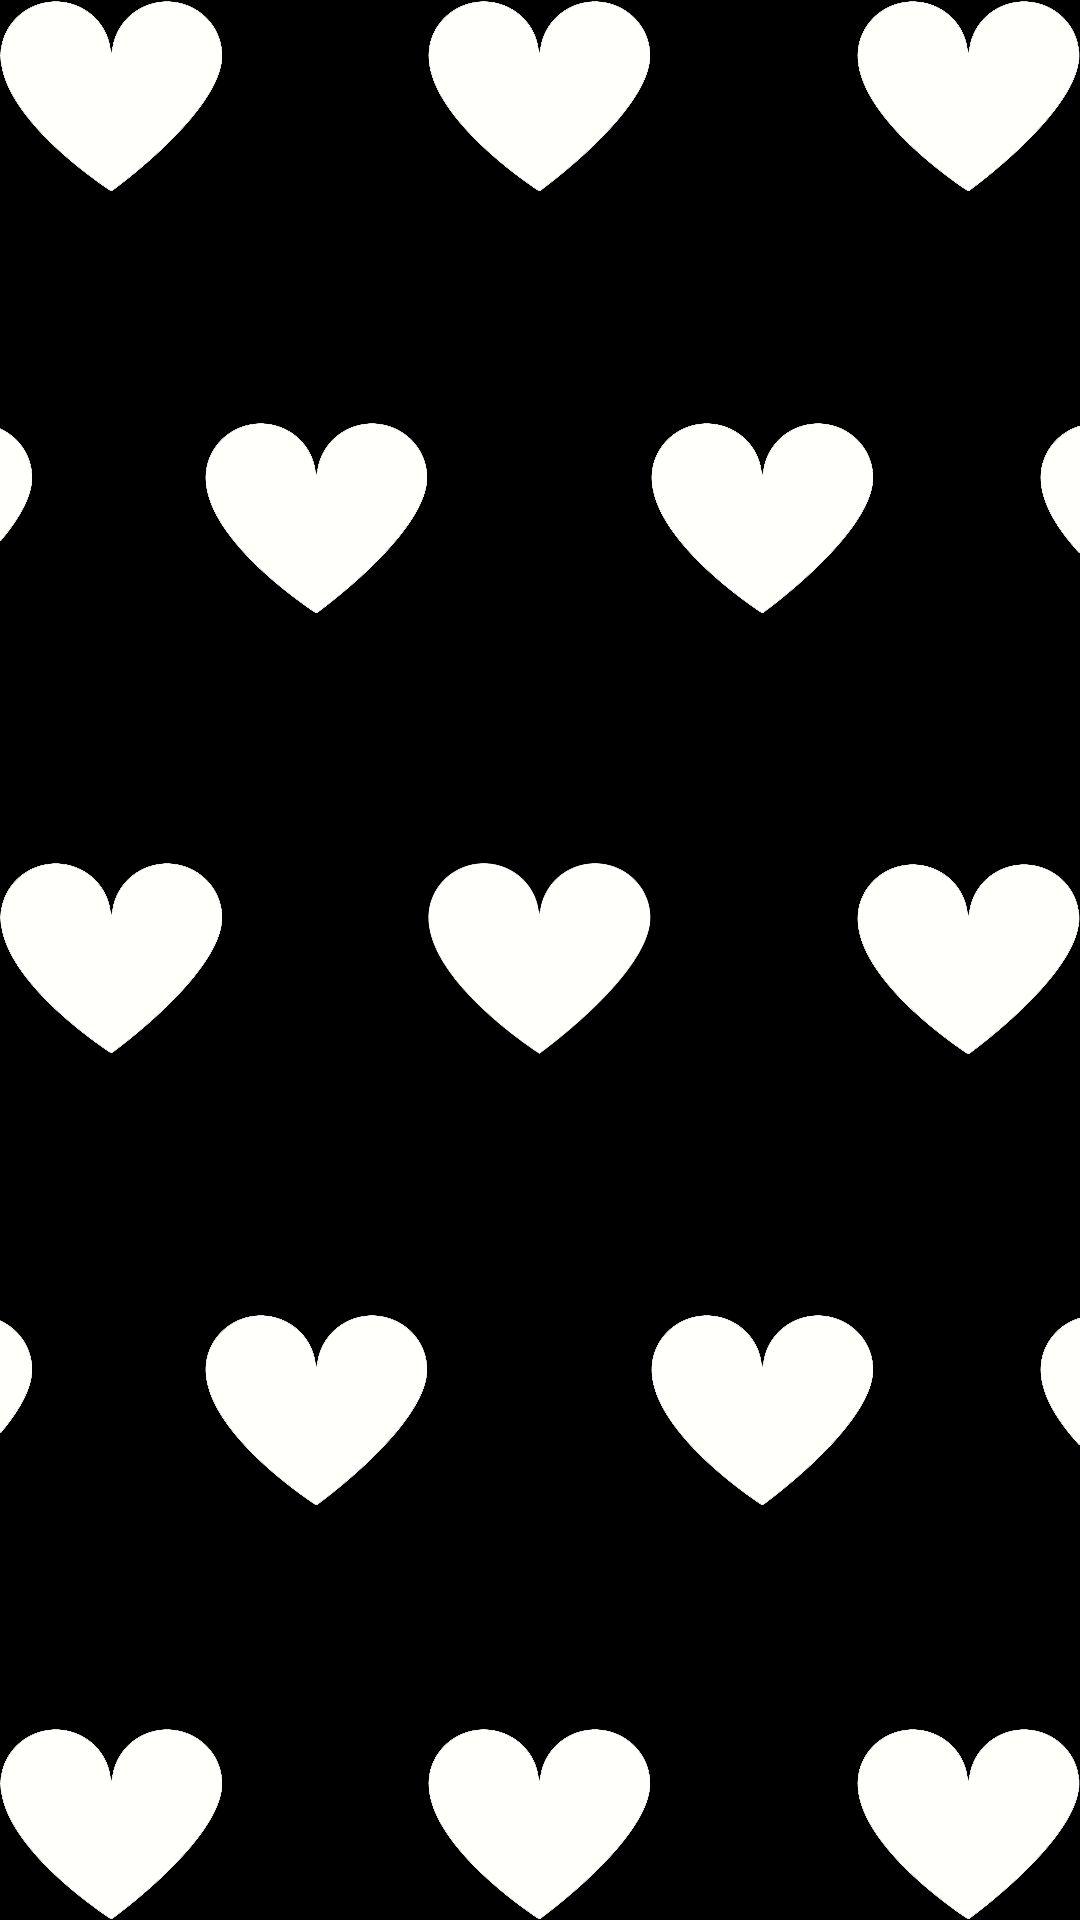 Hearts. Heart iphone wallpaper, Heart wallpaper, iPhone